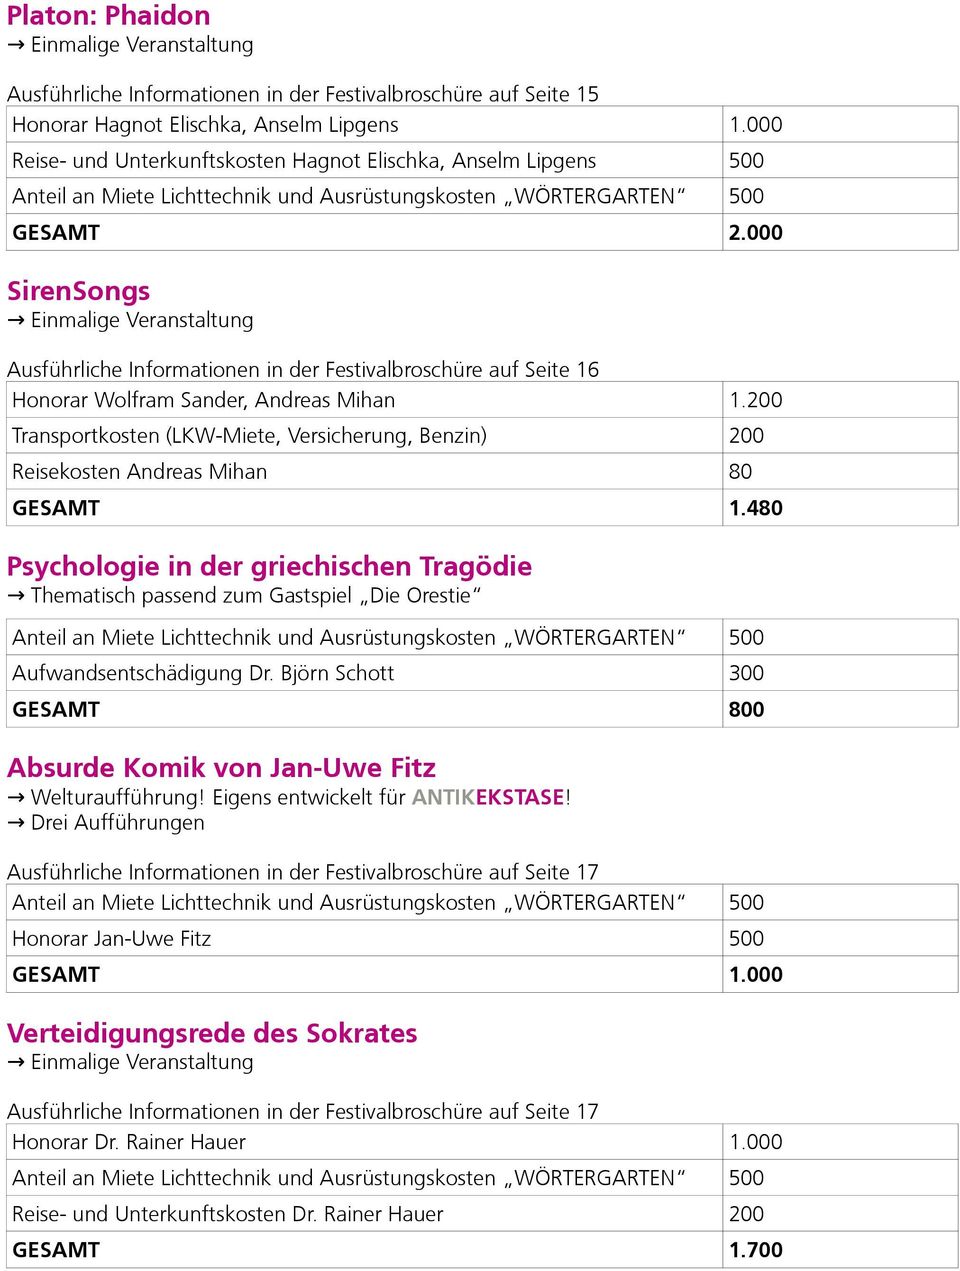 200 Transportkosten (LKW-Miete, Versicherung, Benzin) 200 Reisekosten Andreas Mihan 80 GESAMT 1.